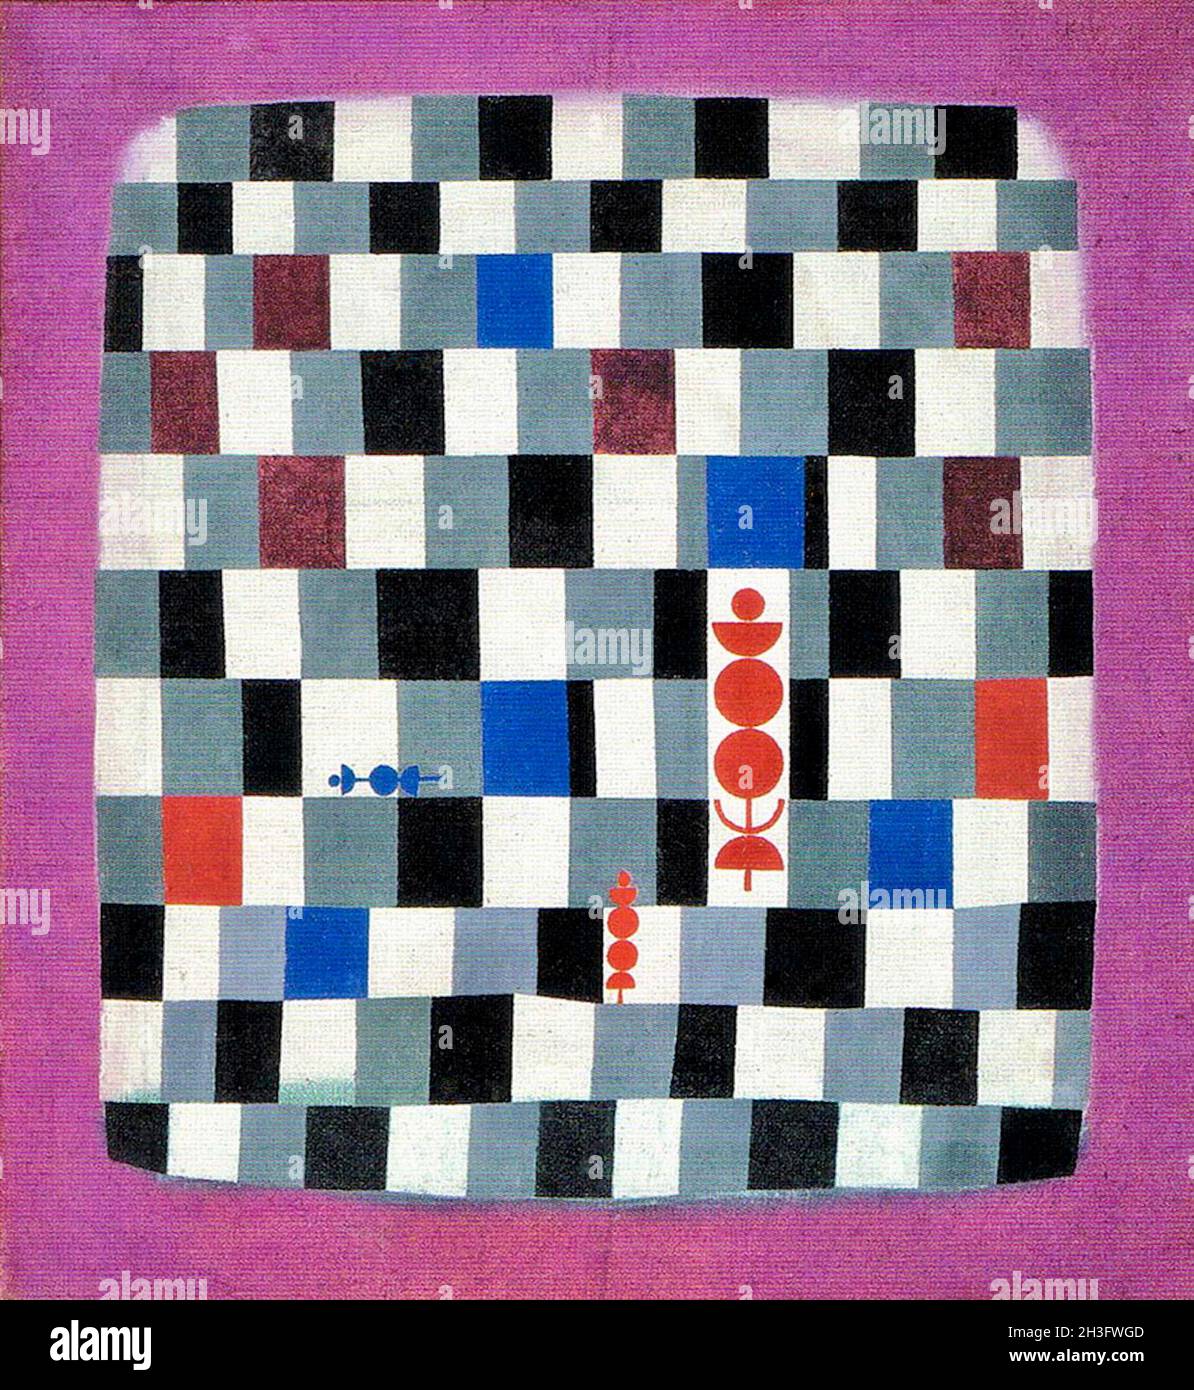 Œuvres de Paul Klee - Ueberschach - Suréchec - Super Chess Banque D'Images